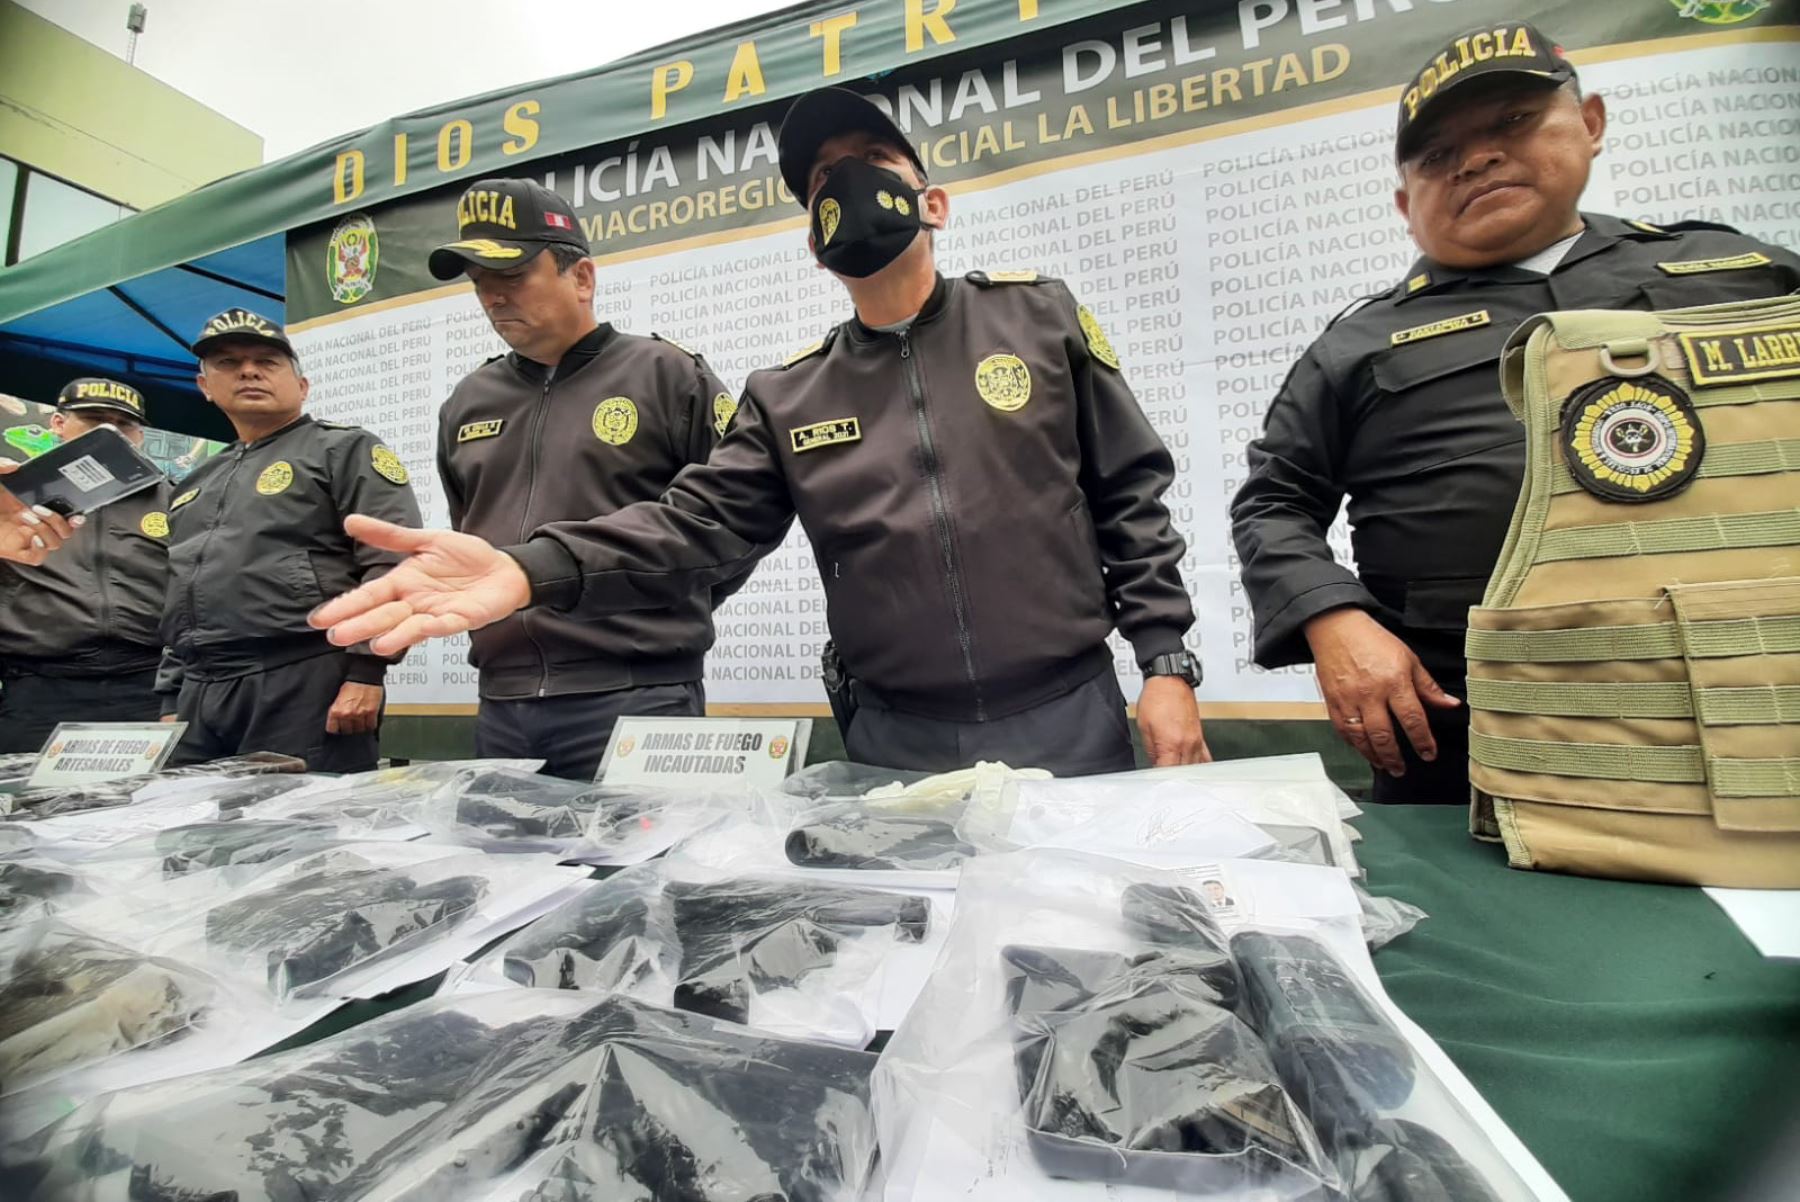 En las intervenciones en la región La Libertad se incautaron 82 armas de fuego de procedencia ilegal. Foto: Cortesía Luis Puell